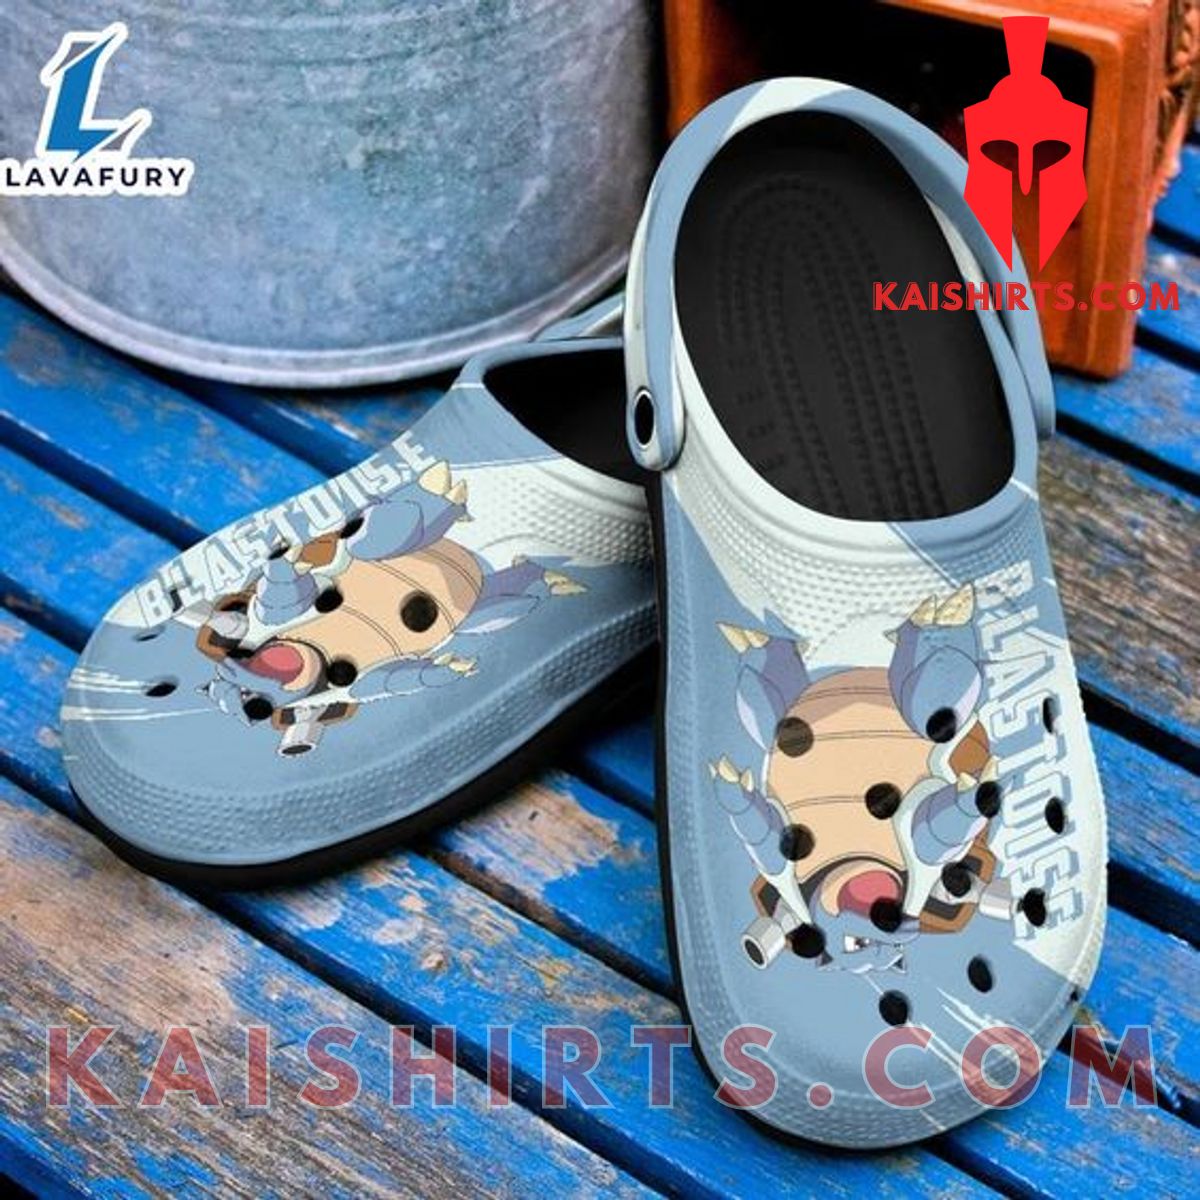 Blastoise Turtle Water Type Pokémon Cute Crocs Classic Clogs Shoes